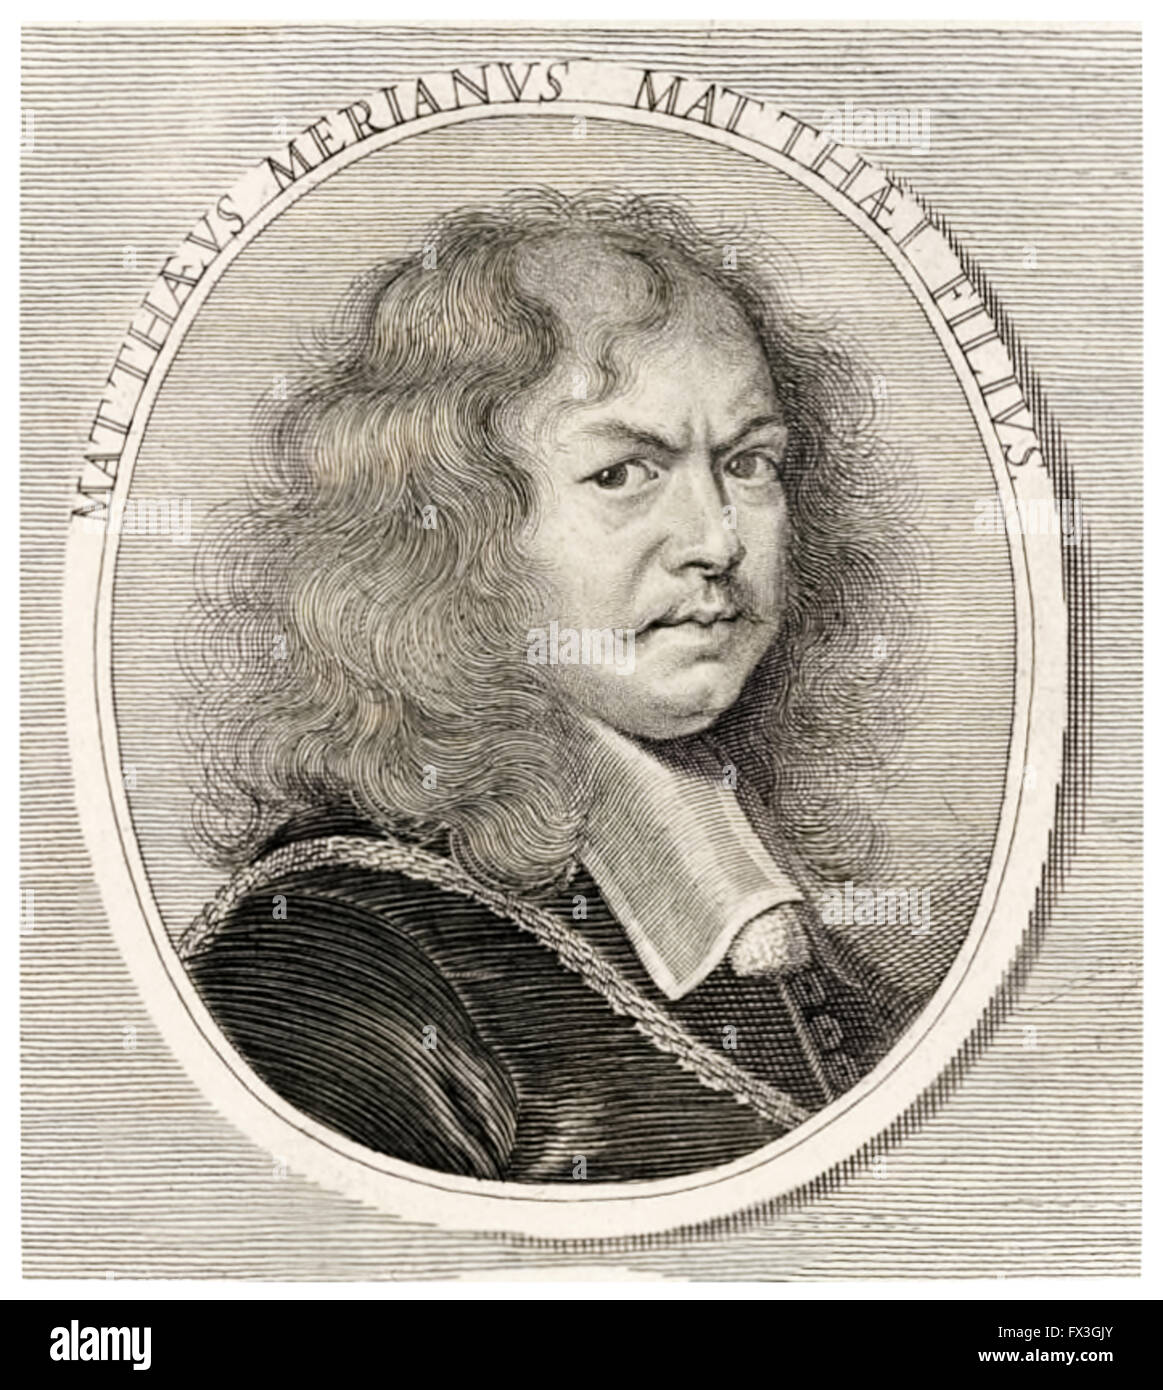 Matthäus Merian der jüngere (1621-1687) Schweizer Kupferstecher (Gravur nach Joachum von Sandrart). Siehe Beschreibung für mehr Informationen. Stockfoto